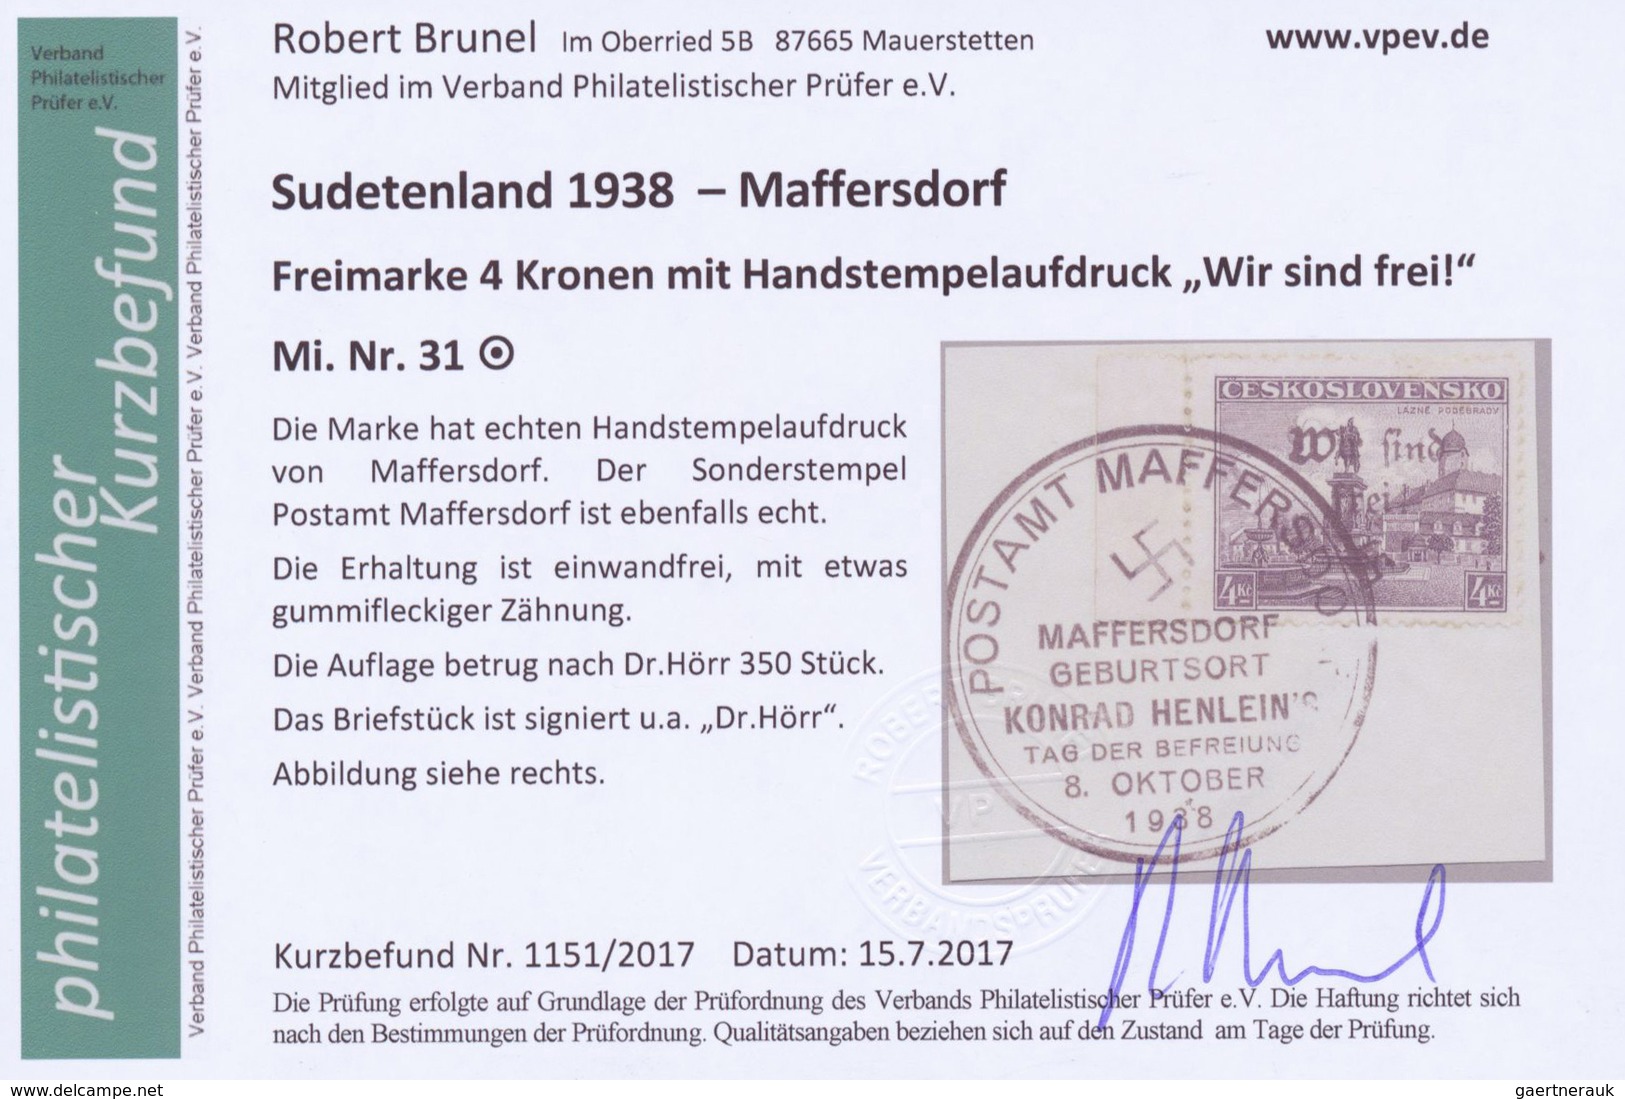 Brfst/Br Sudetenland - Maffersdorf: 1938, Mi.Nr. 14, 29, 31-34, 6 Werte auf Briefstück sowie Nr. 23 auf AK (G